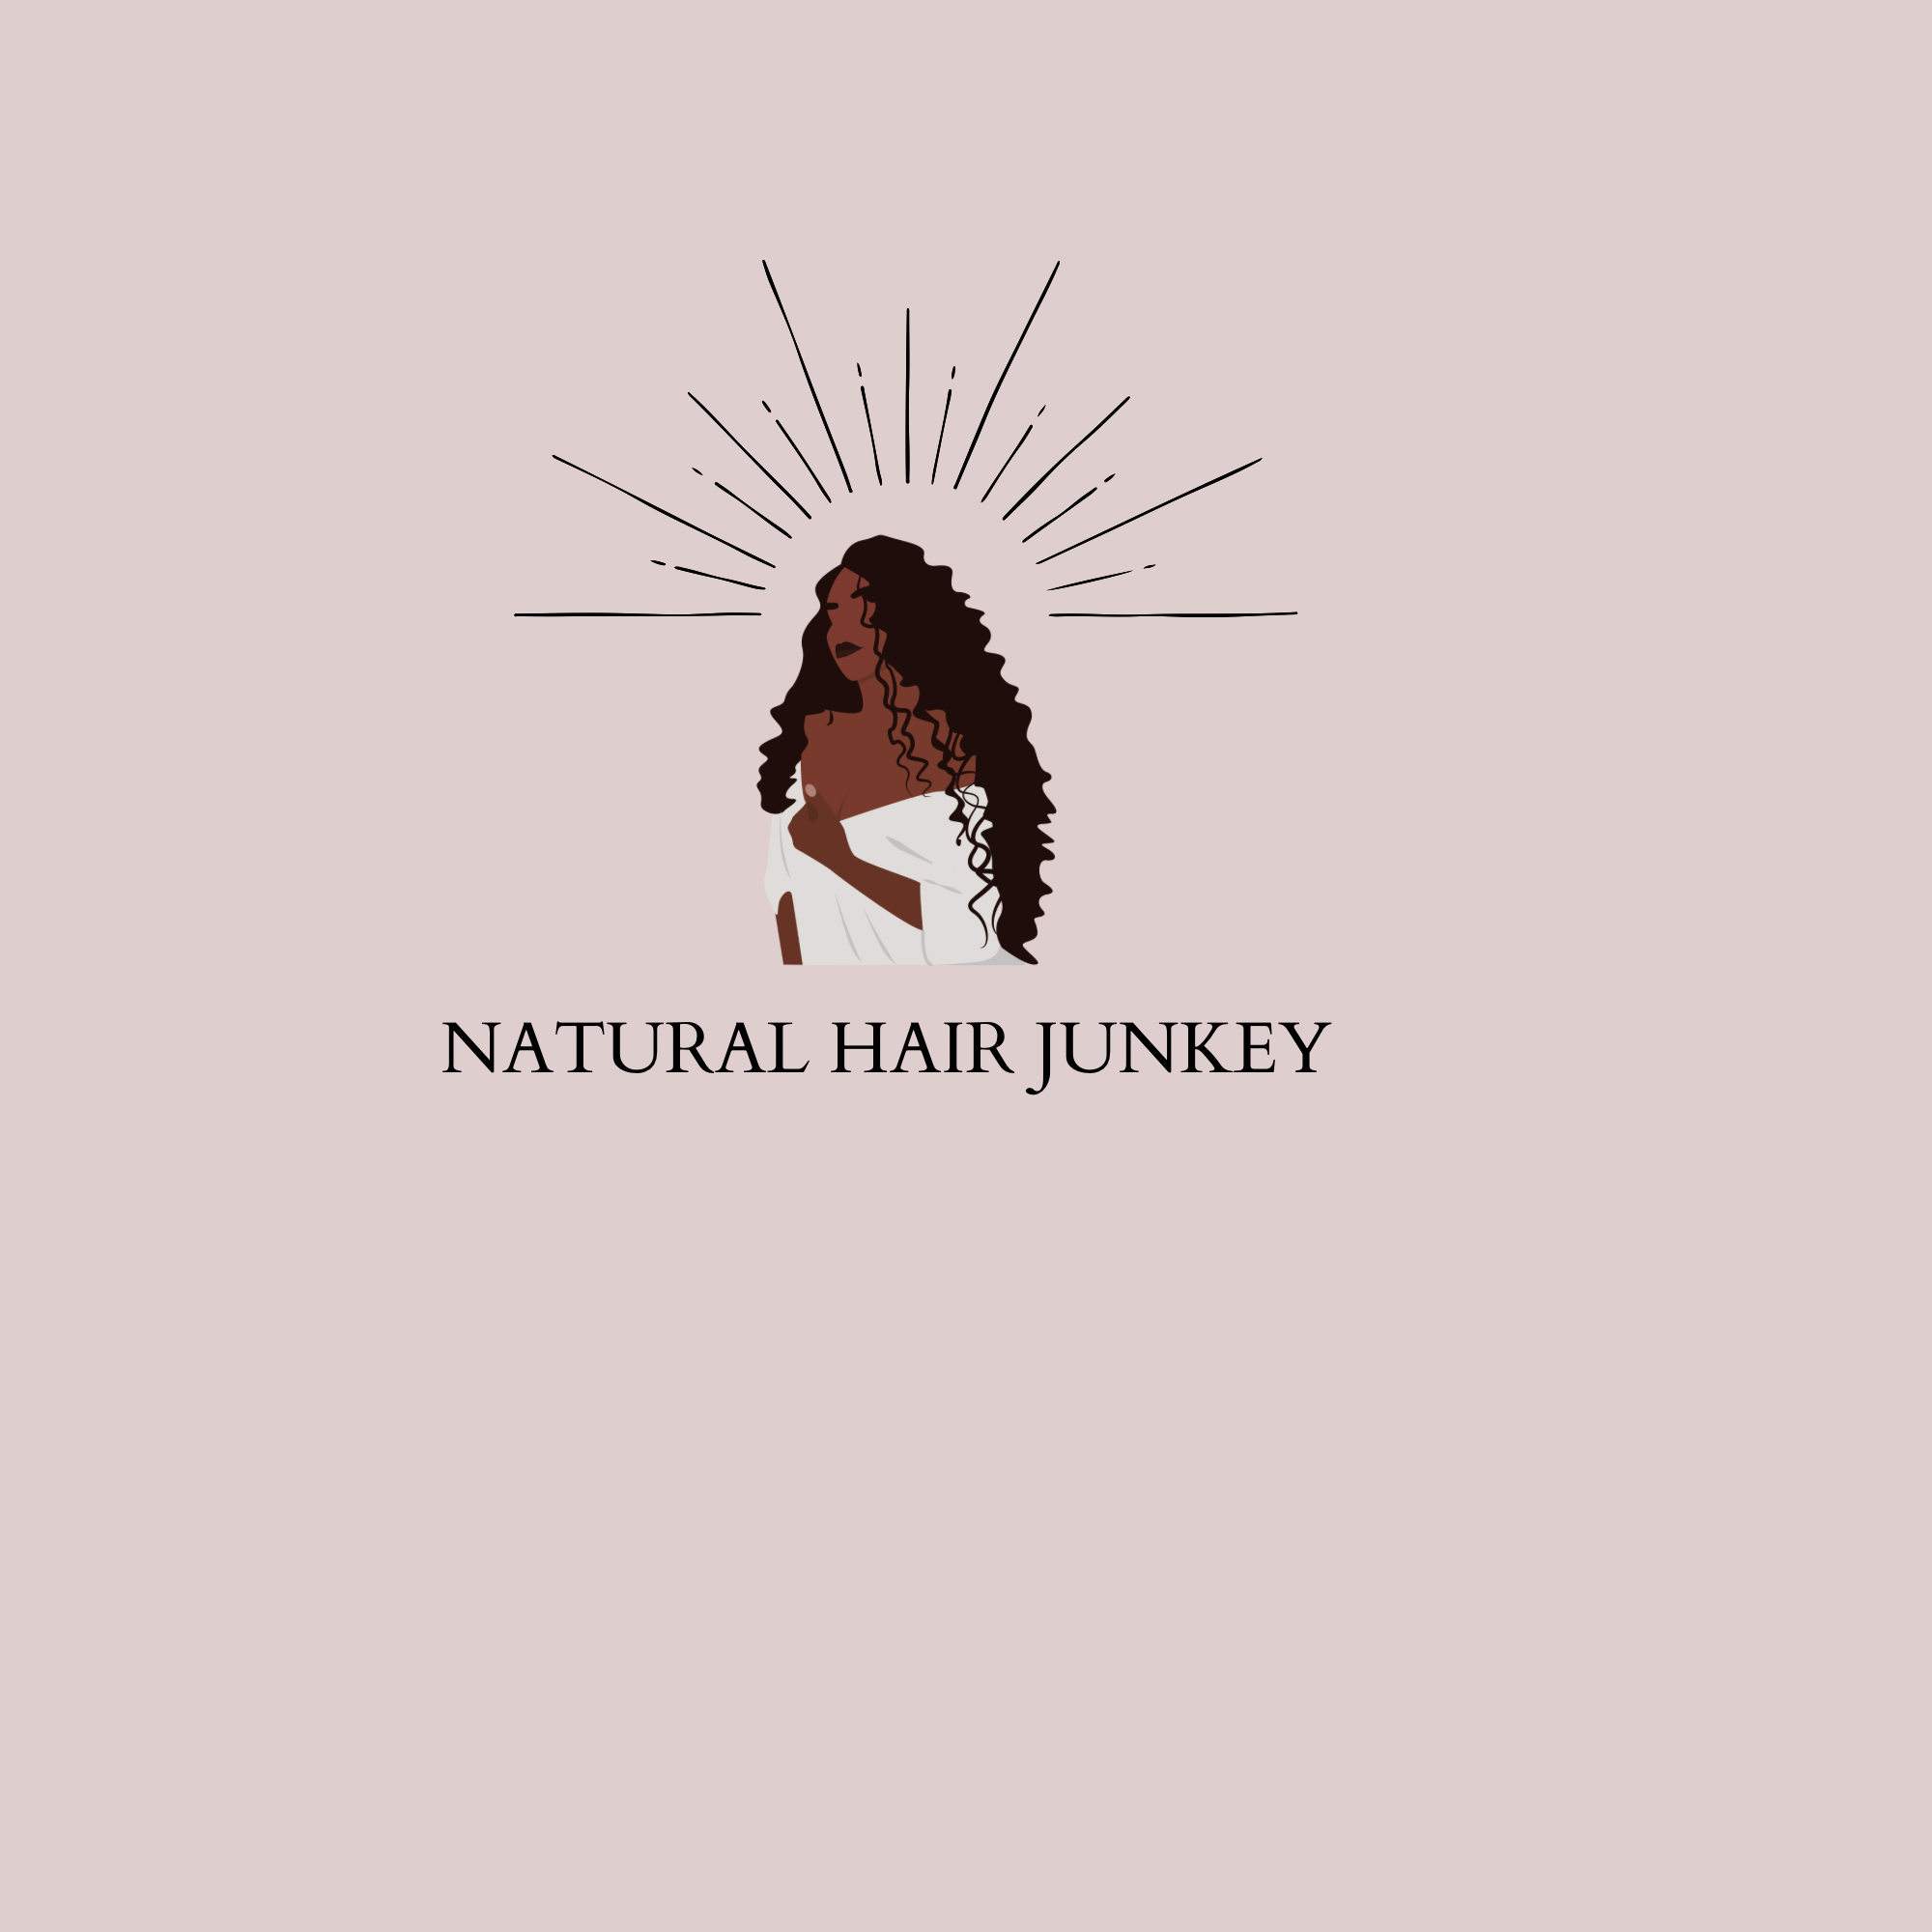 Natural Hair Junkey cover imag